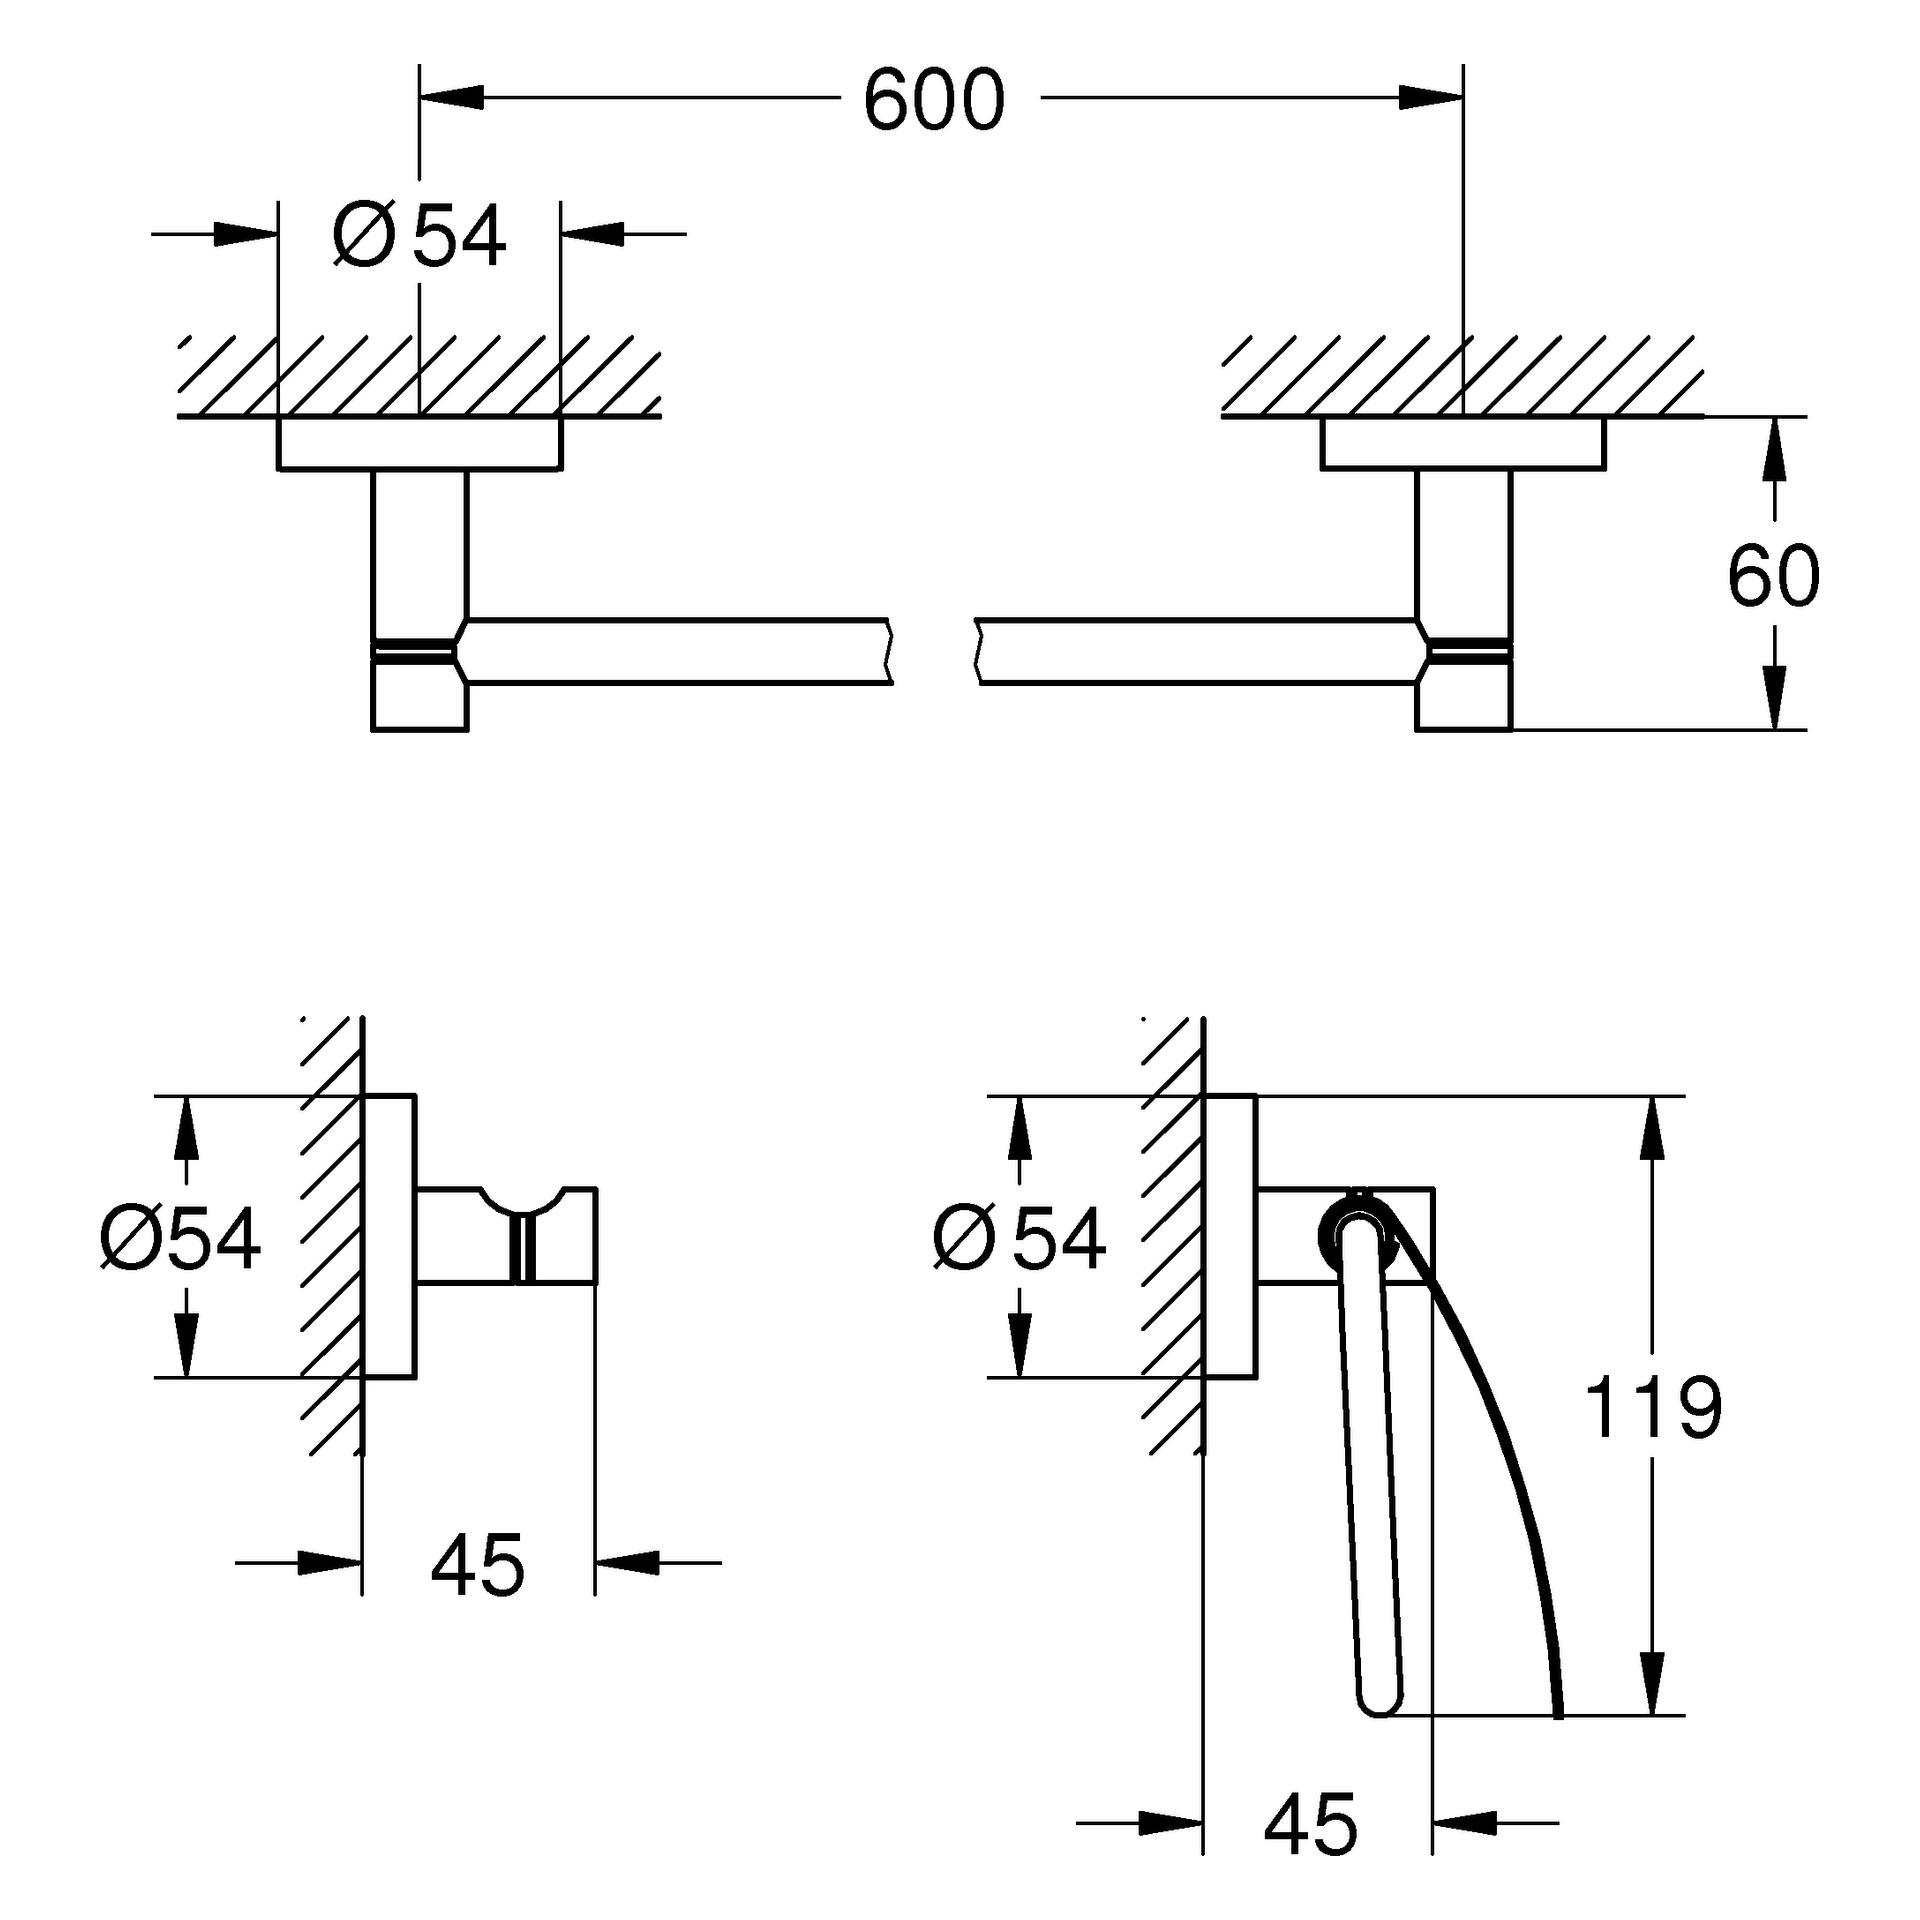 3-in-1 Bad-Set Essentials 40775_1, mit Badetuchhalter 600 mm, Bademantelhaken, WC-Papierhalter, mit Deckel, chrom